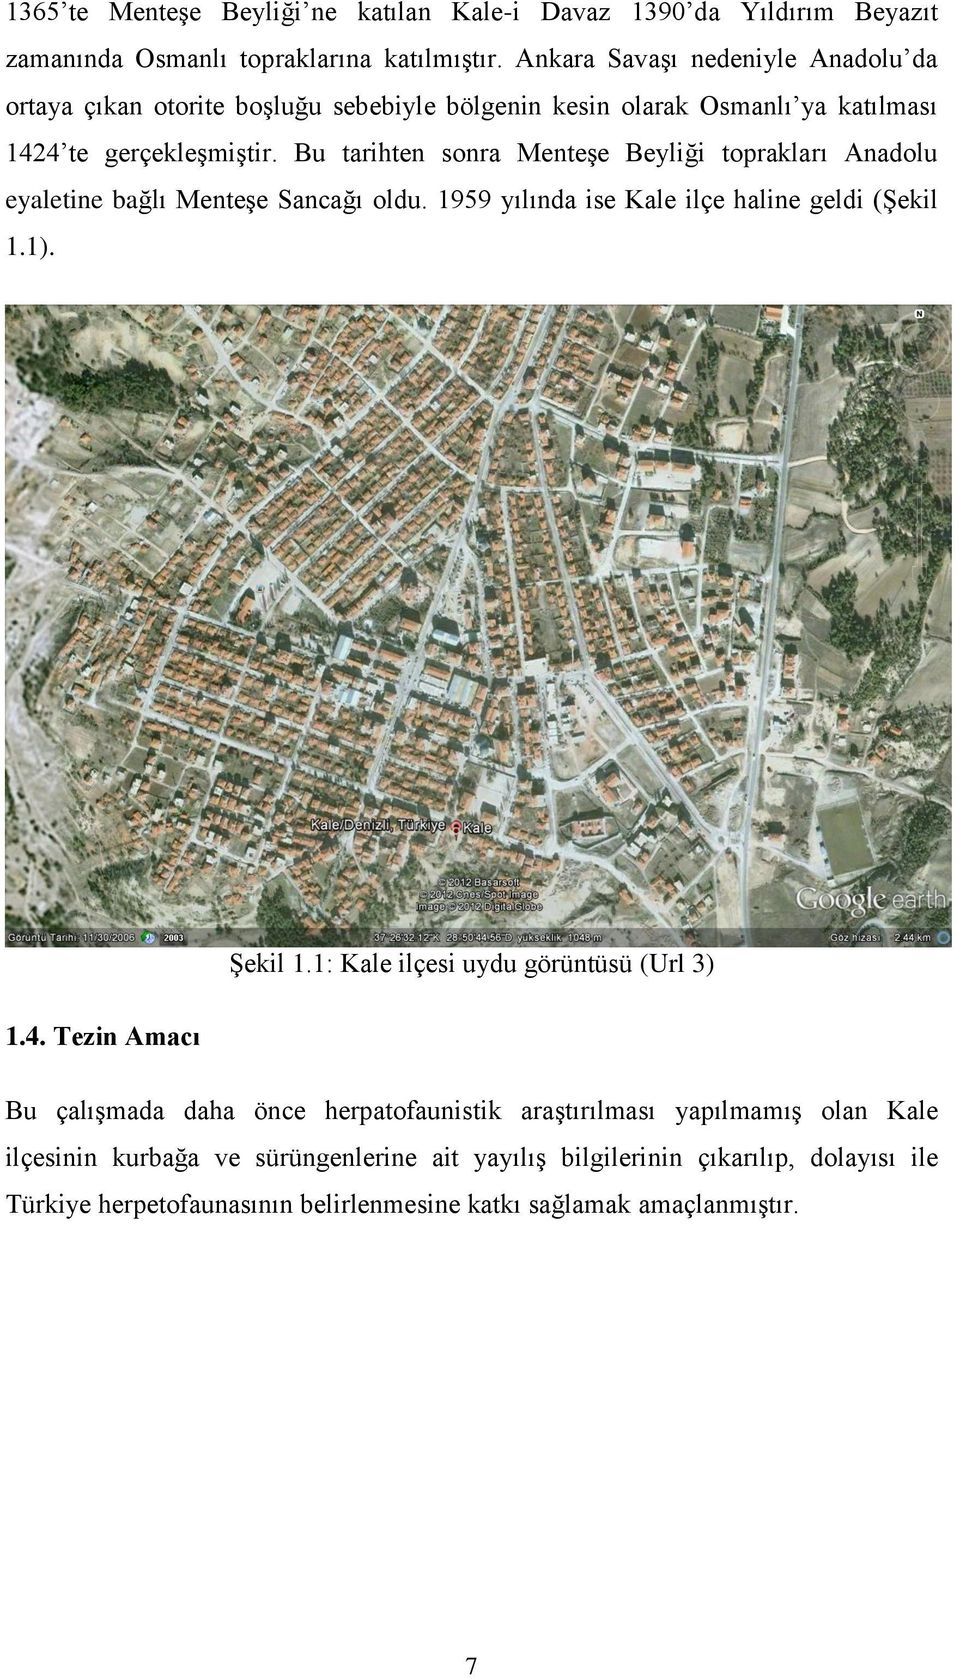 Bu tarihten sonra Menteşe Beyliği toprakları Anadolu eyaletine bağlı Menteşe Sancağı oldu. 1959 yılında ise Kale ilçe haline geldi (Şekil 1.1). Şekil 1.